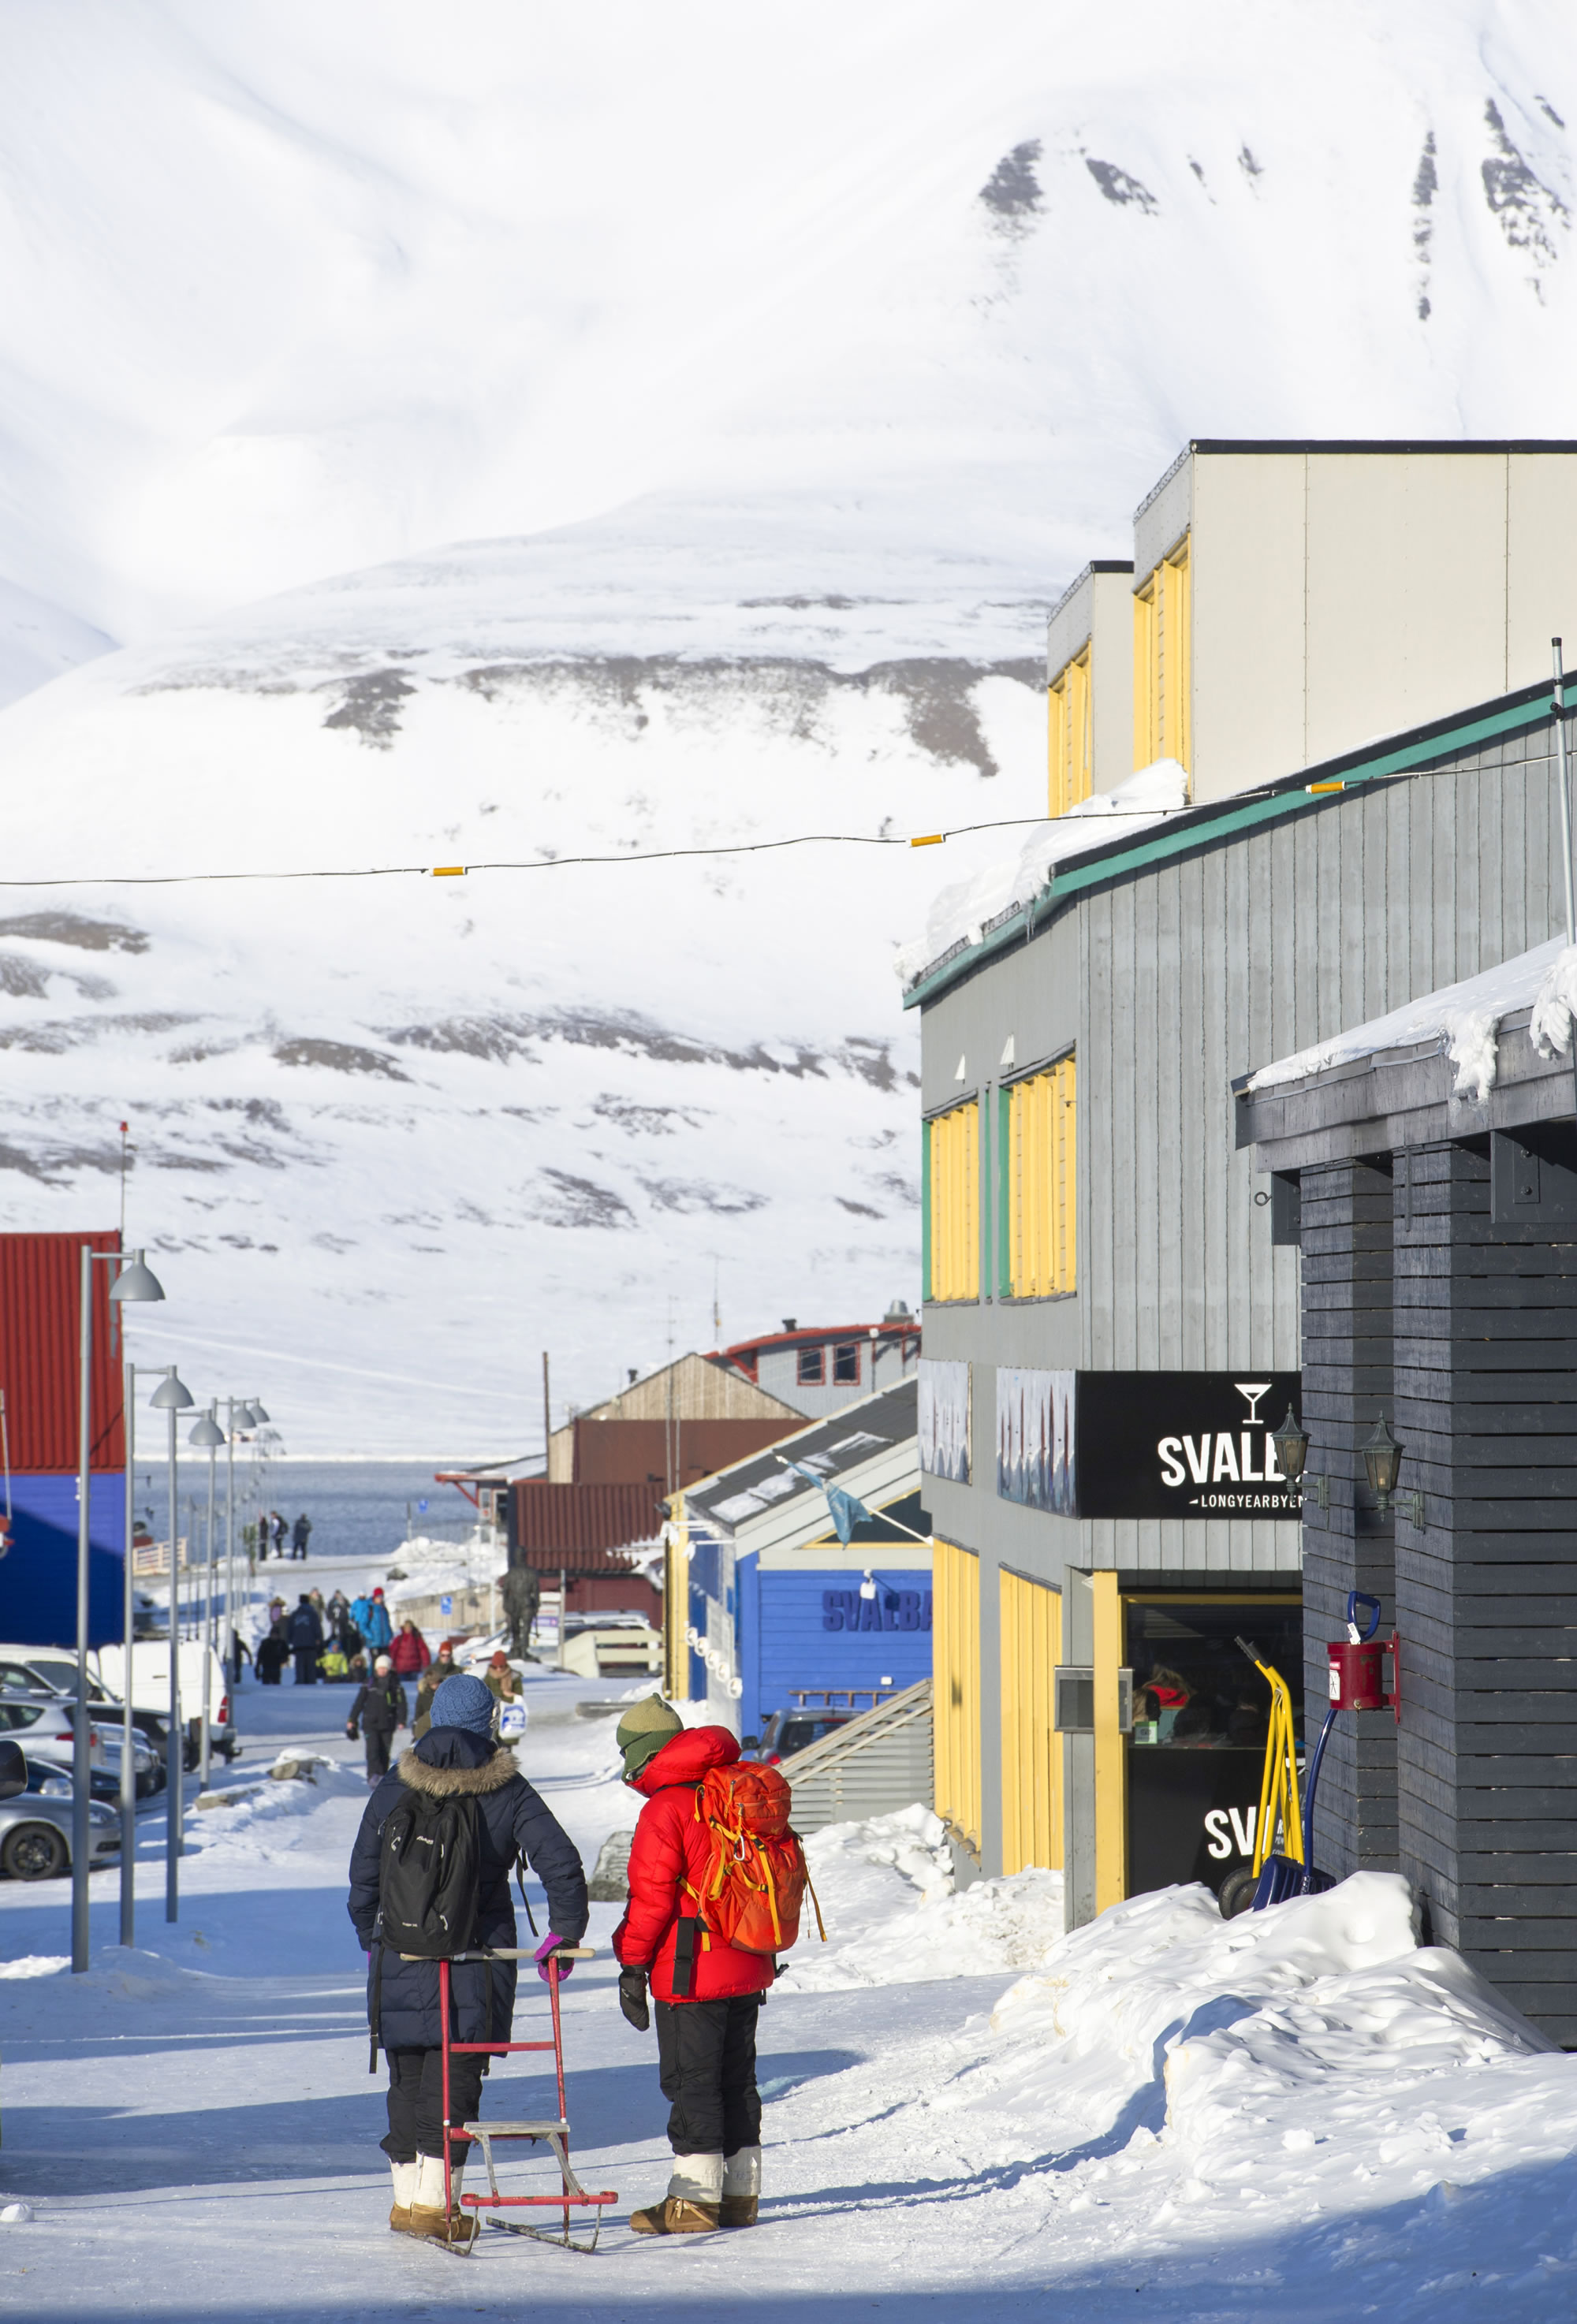 Deux personnes, en tenue d’hiver, marchent dans une rue enneigée bordée de maisons colorées, face à la mer, avec une montagne enneigée en arrière-plan.